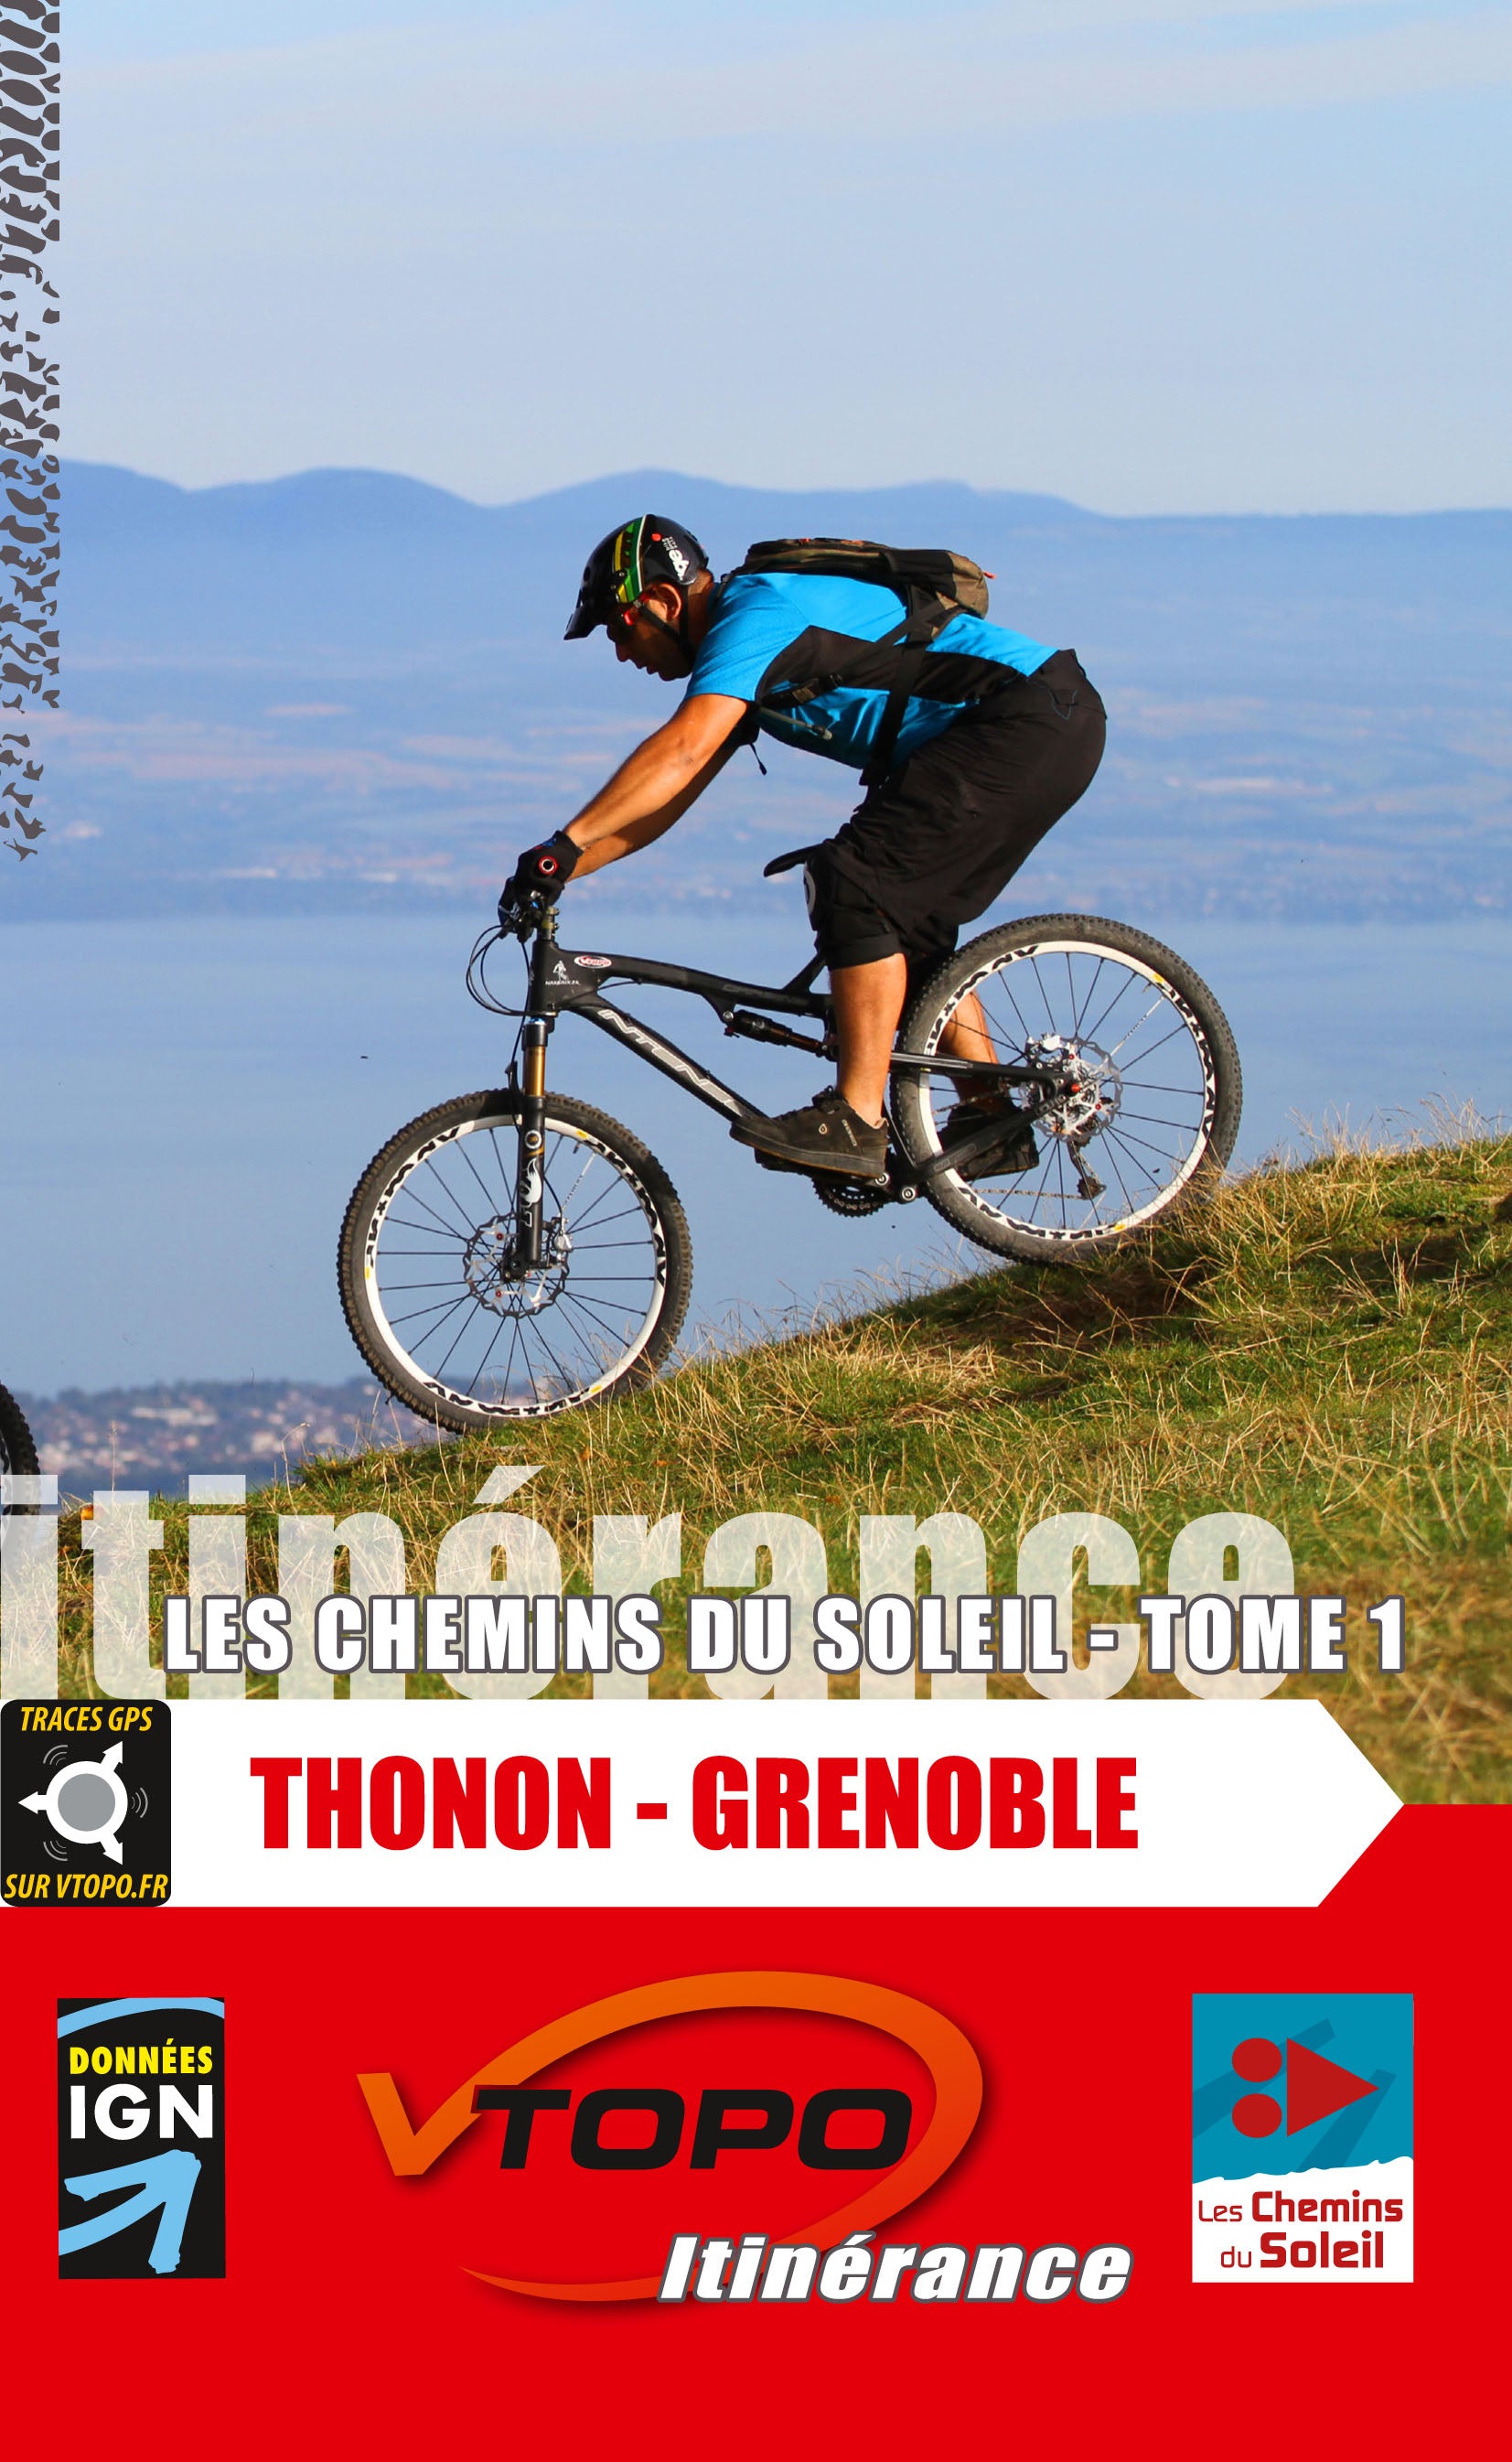 VTOPO VTT Itinérance Chemins du Soleil Thonon-les-Bains Grenoble